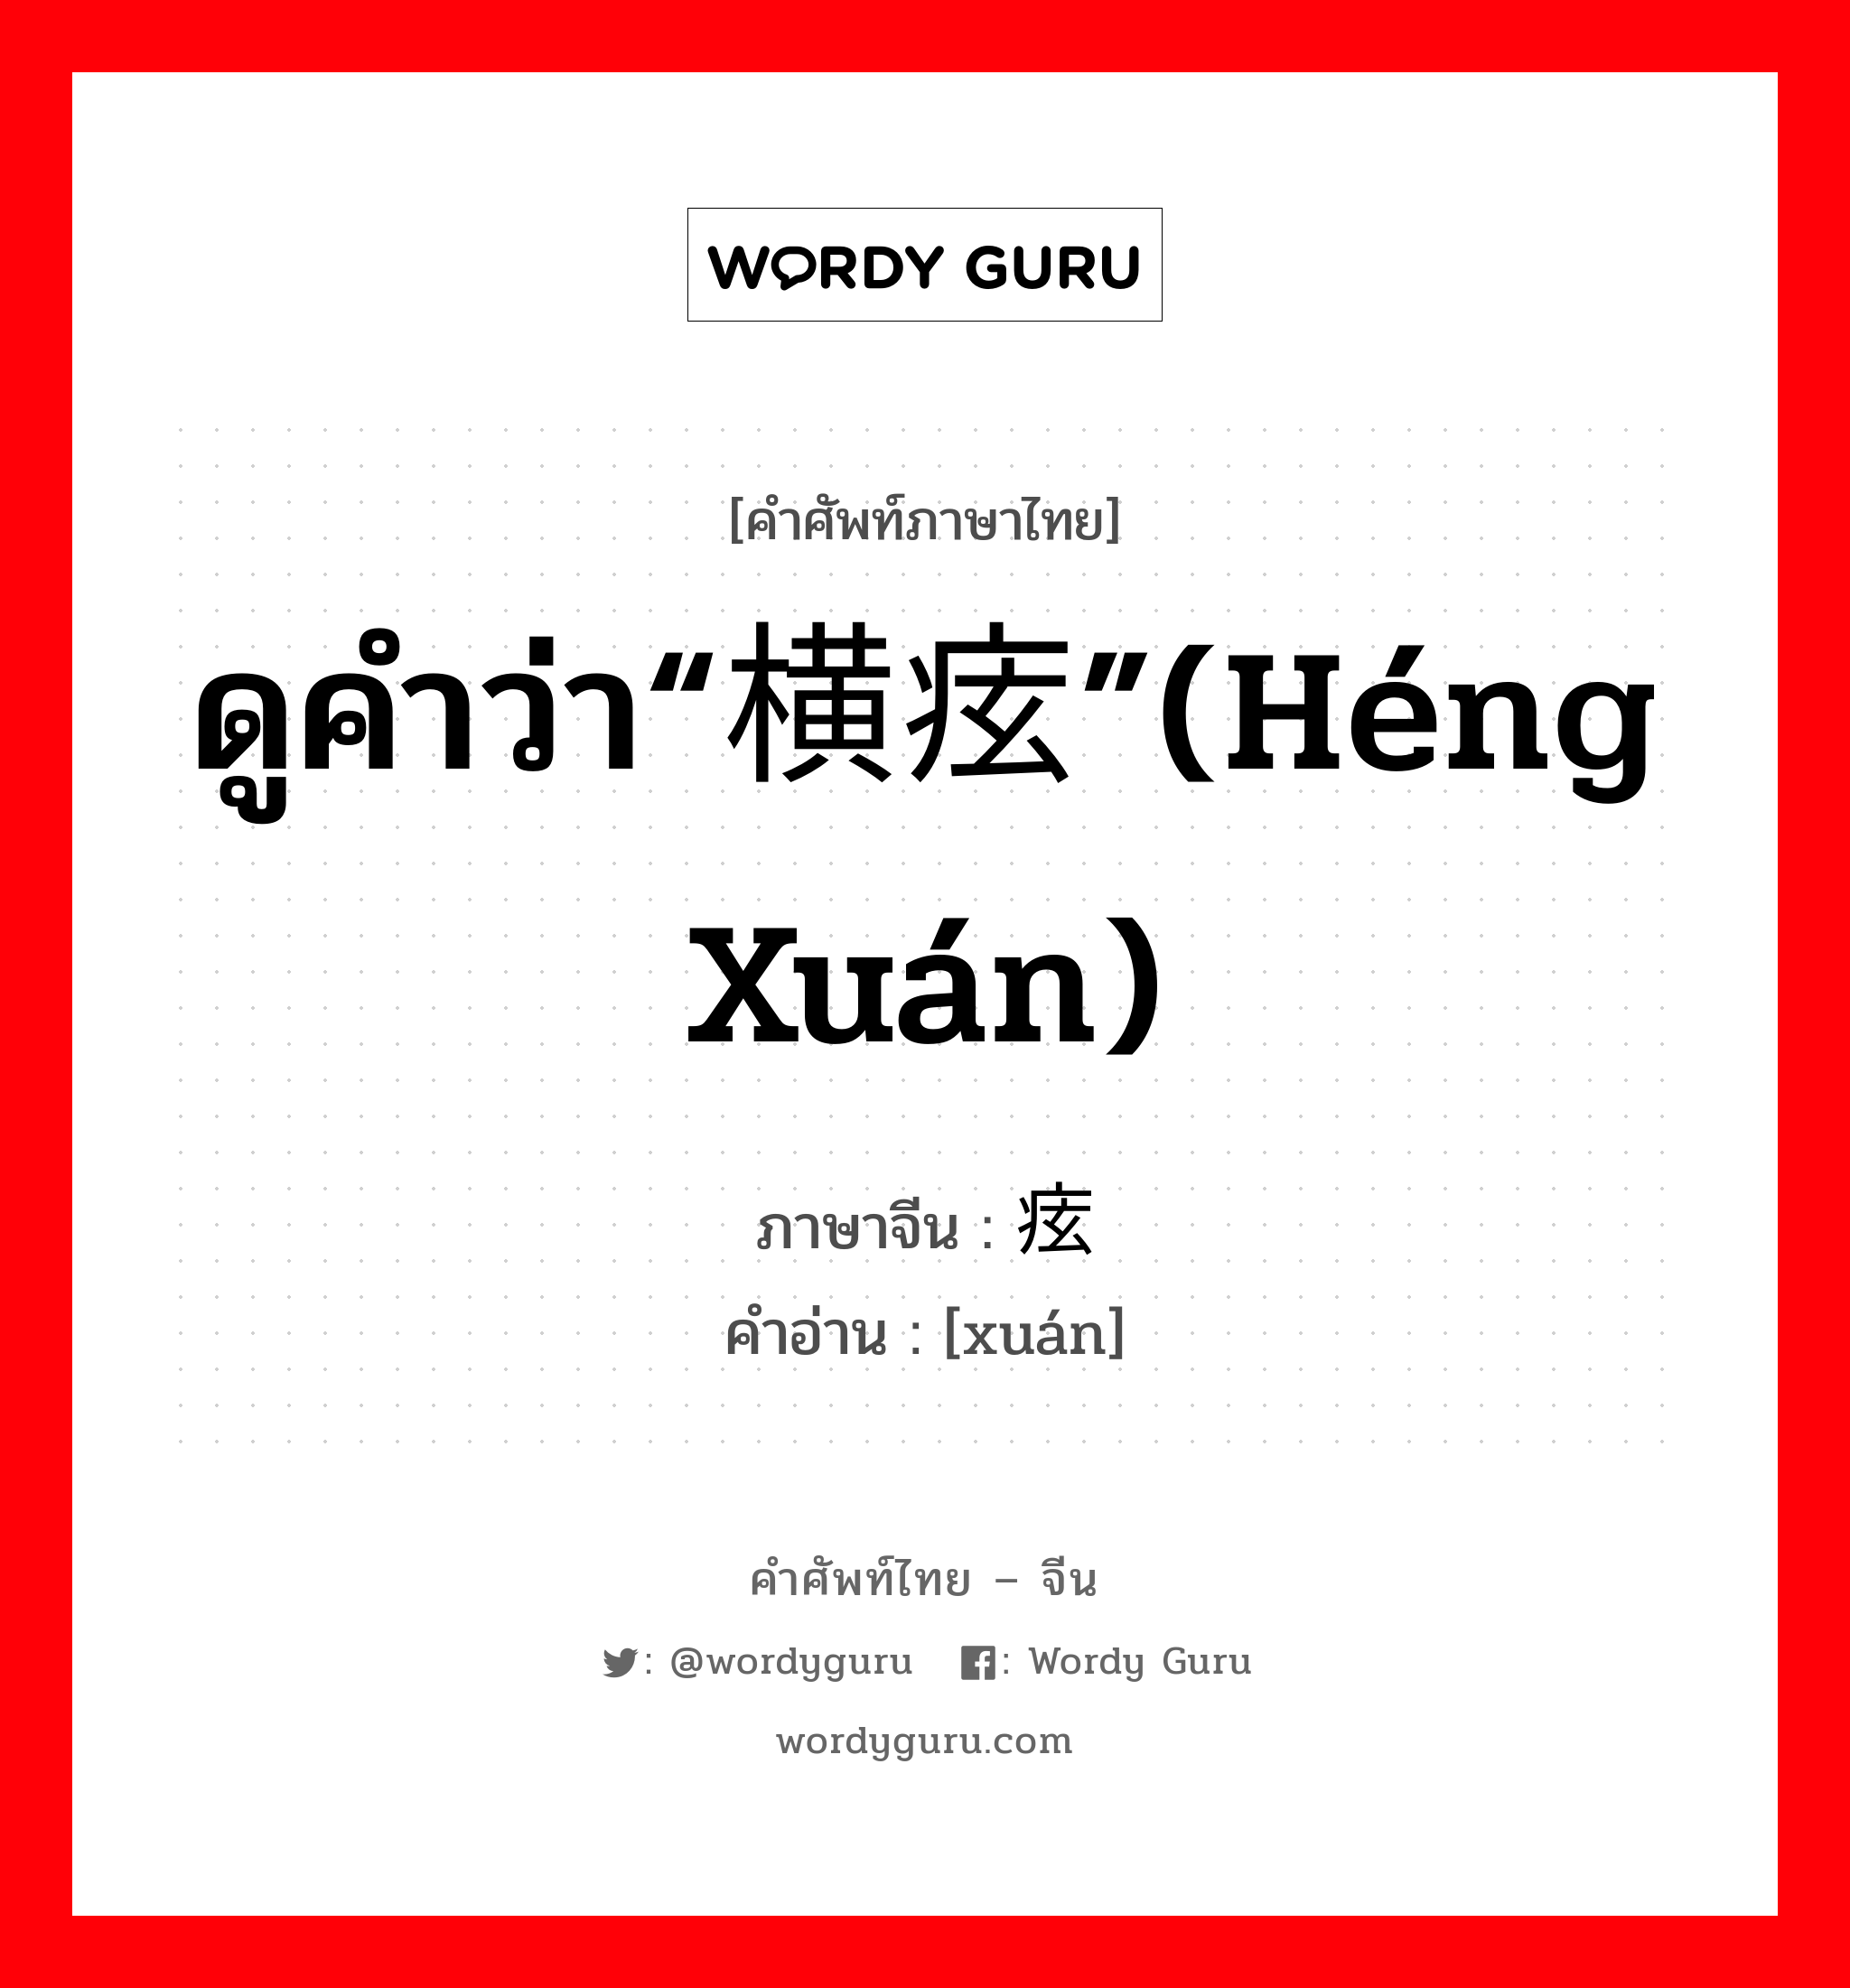 ดูคำว่า“横痃”(héng xuán) ภาษาจีนคืออะไร, คำศัพท์ภาษาไทย - จีน ดูคำว่า“横痃”(héng xuán) ภาษาจีน 痃 คำอ่าน [xuán]